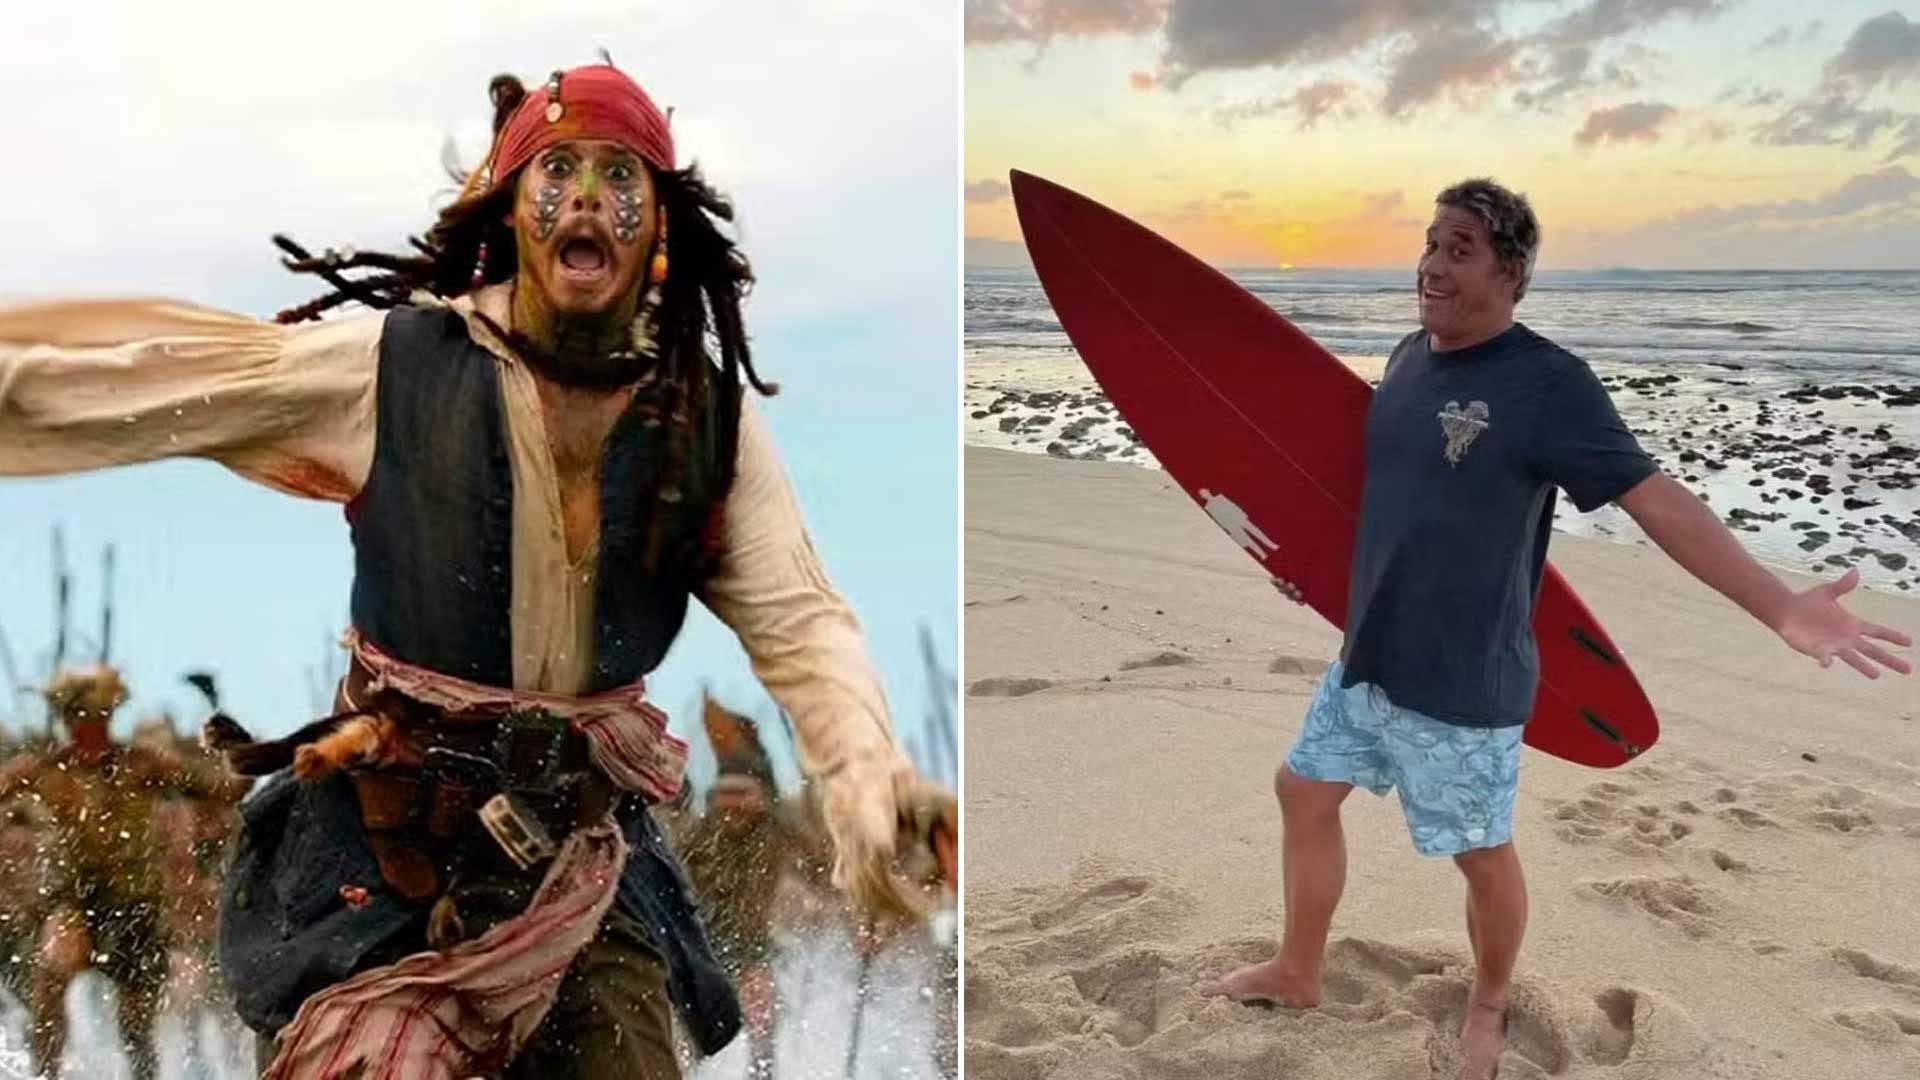 Tamayo Perry, surfista y actor de 'Piratas del Caribe', murió por un ataque de tiburón en una playa de Hawái. Autoridades y testigos confirmaron múltiples mordidas.